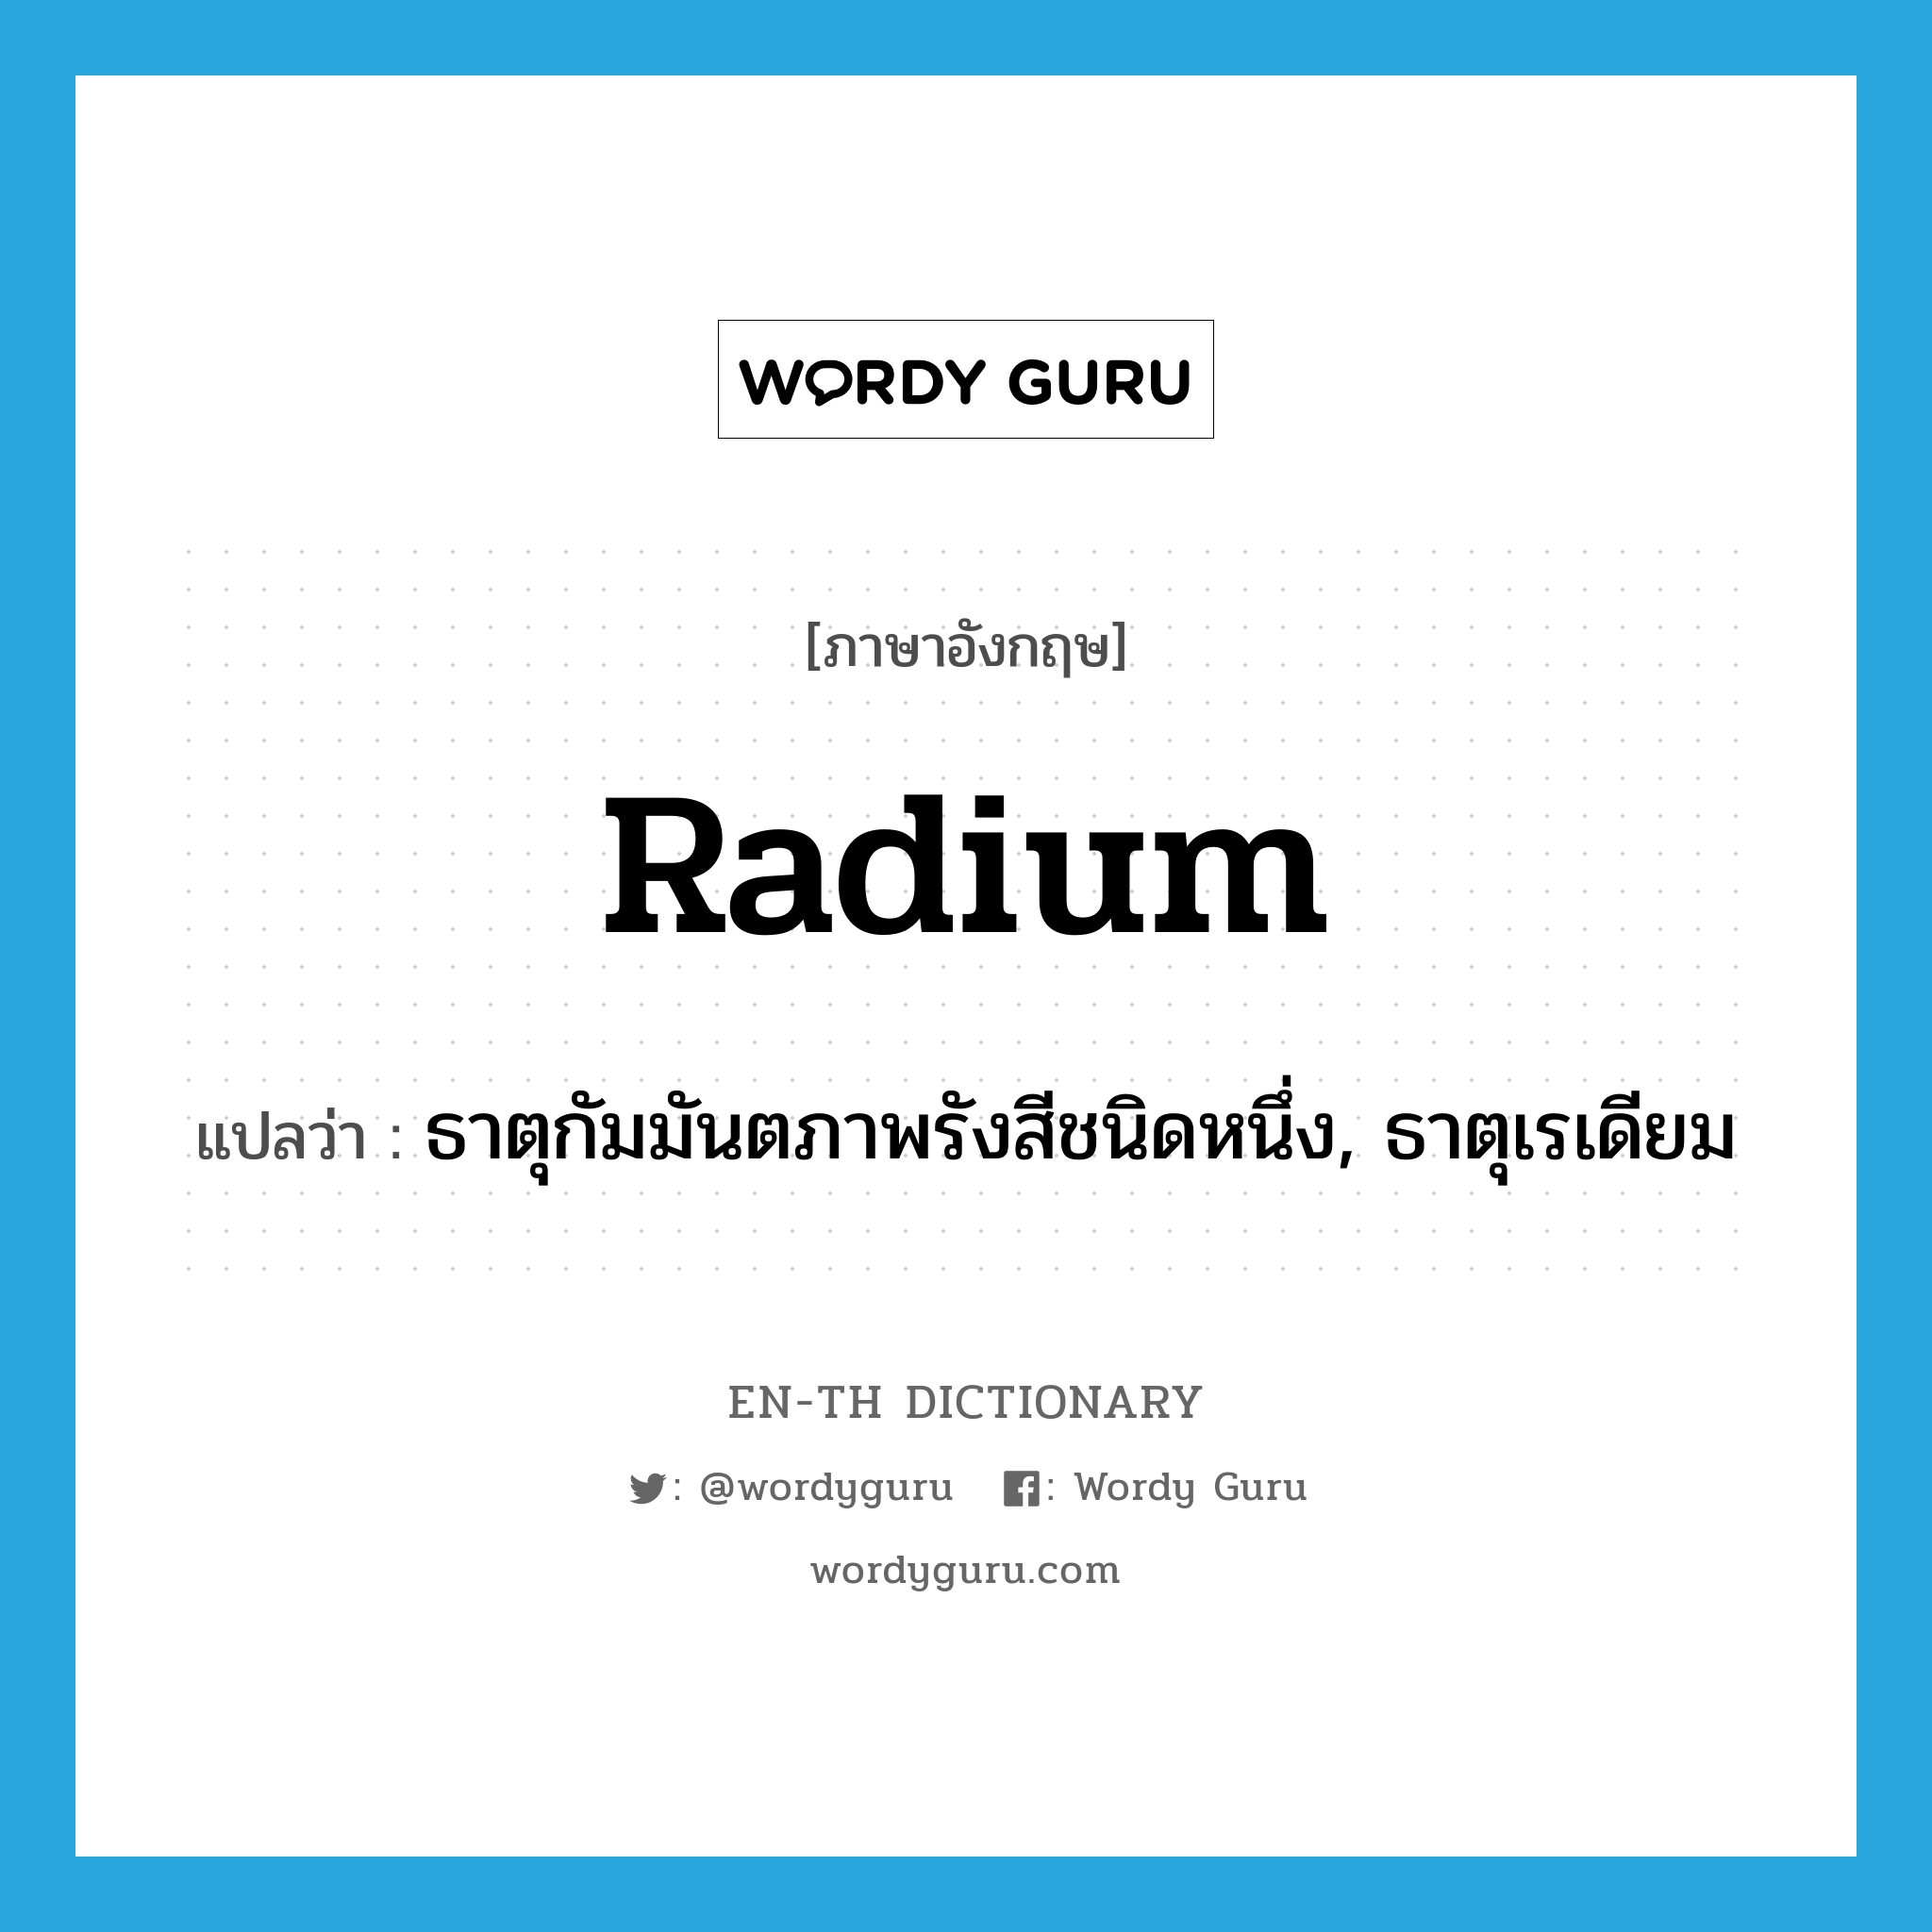 radium แปลว่า?, คำศัพท์ภาษาอังกฤษ radium แปลว่า ธาตุกัมมันตภาพรังสีชนิดหนึ่ง, ธาตุเรเดียม ประเภท N หมวด N